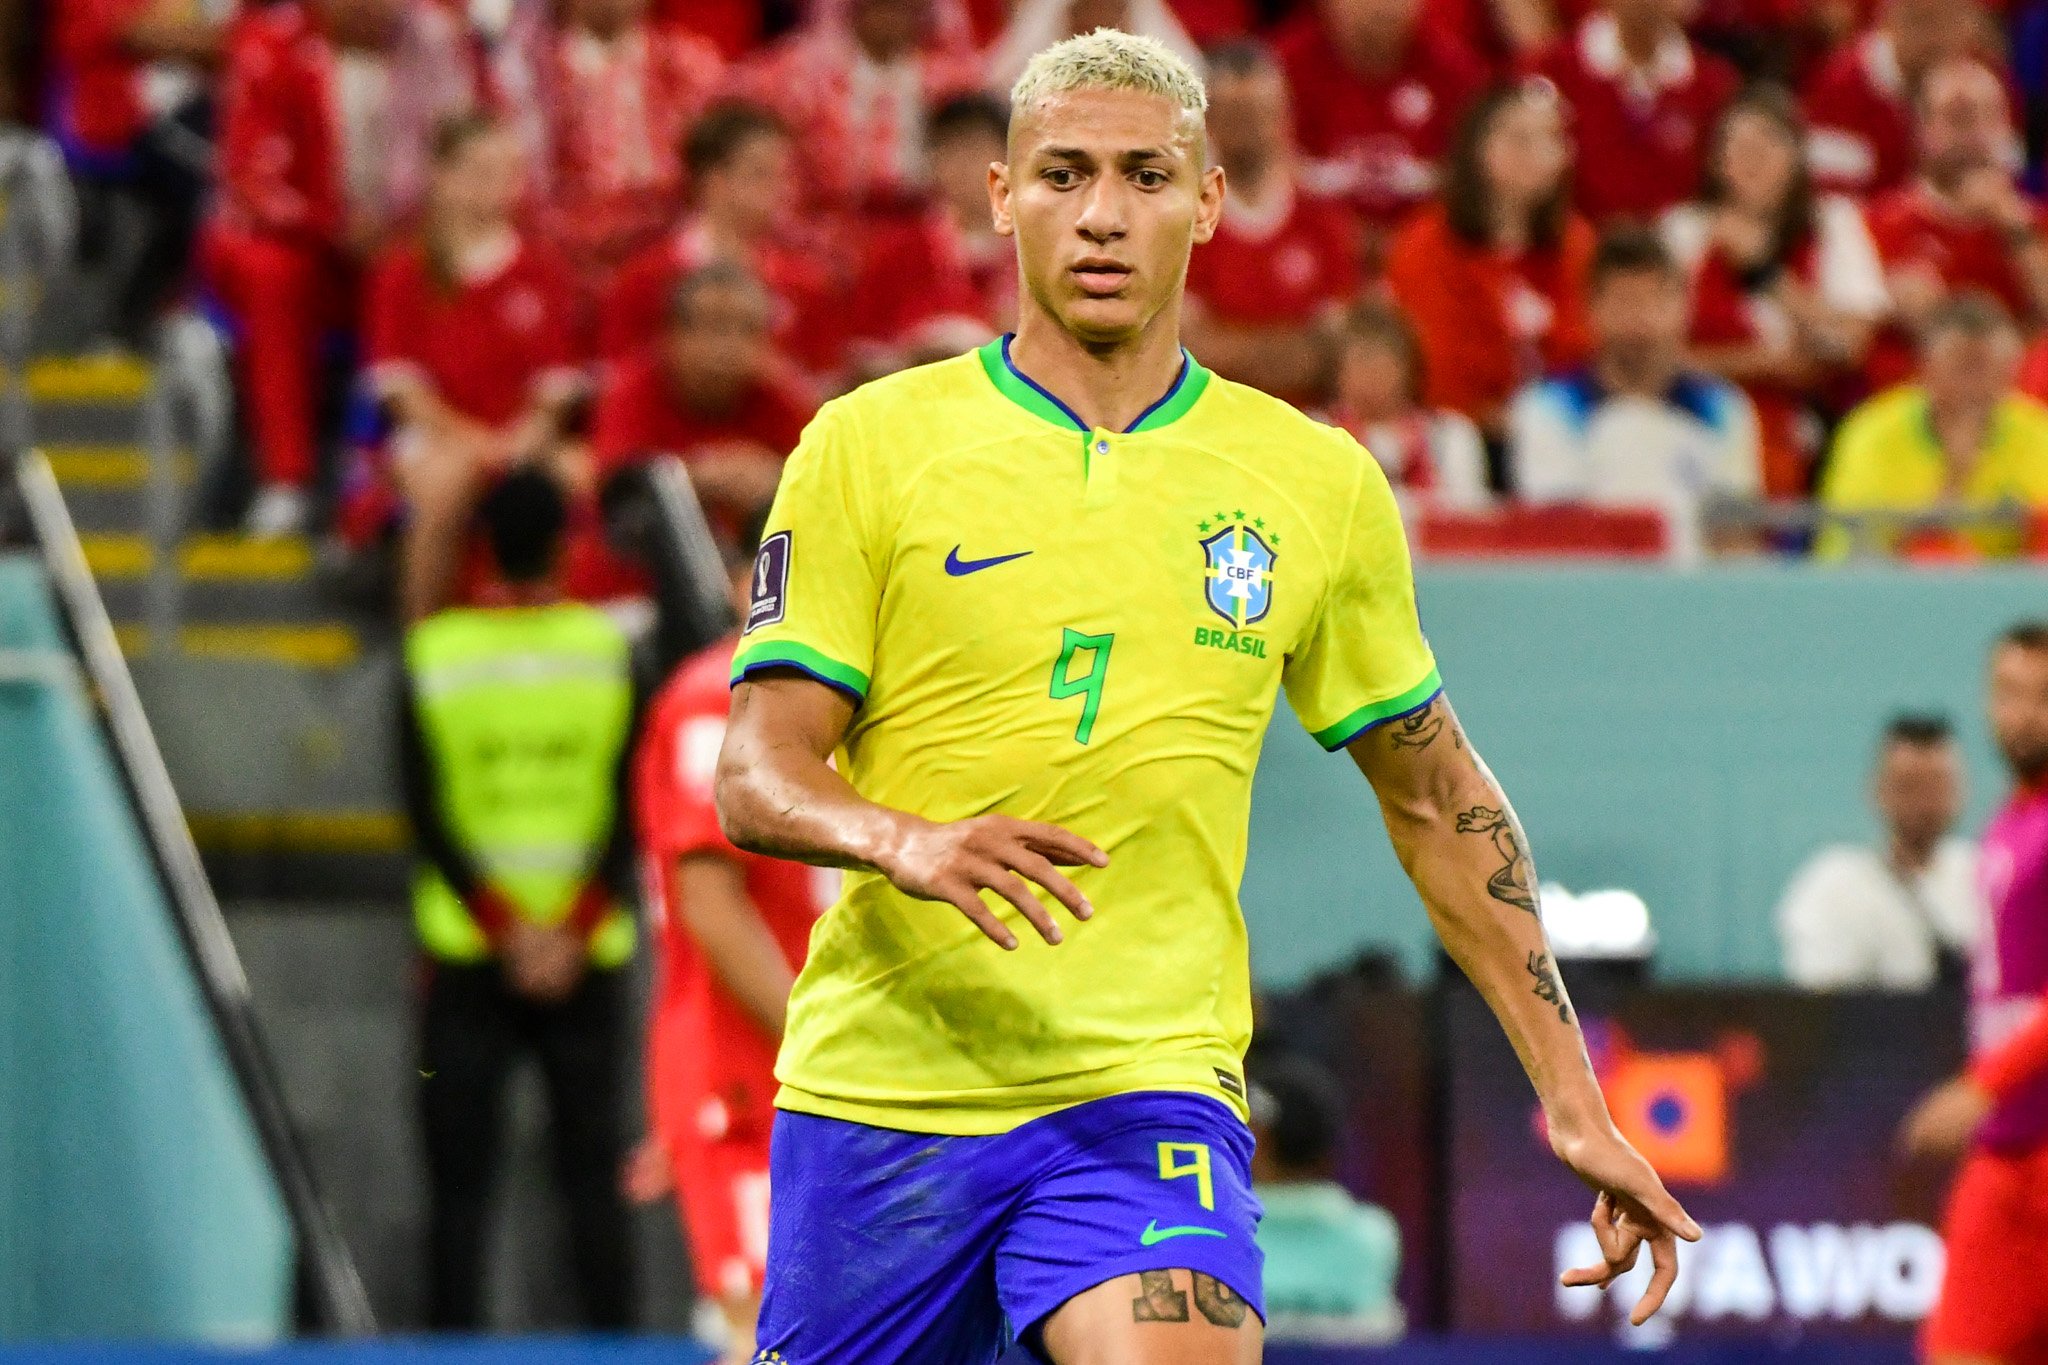 Camisa 9 da Seleção Brasileira na Copa do Mundo foi um dos escolhidos para ter nome imortalizado entre ídolos capixabas do esporte